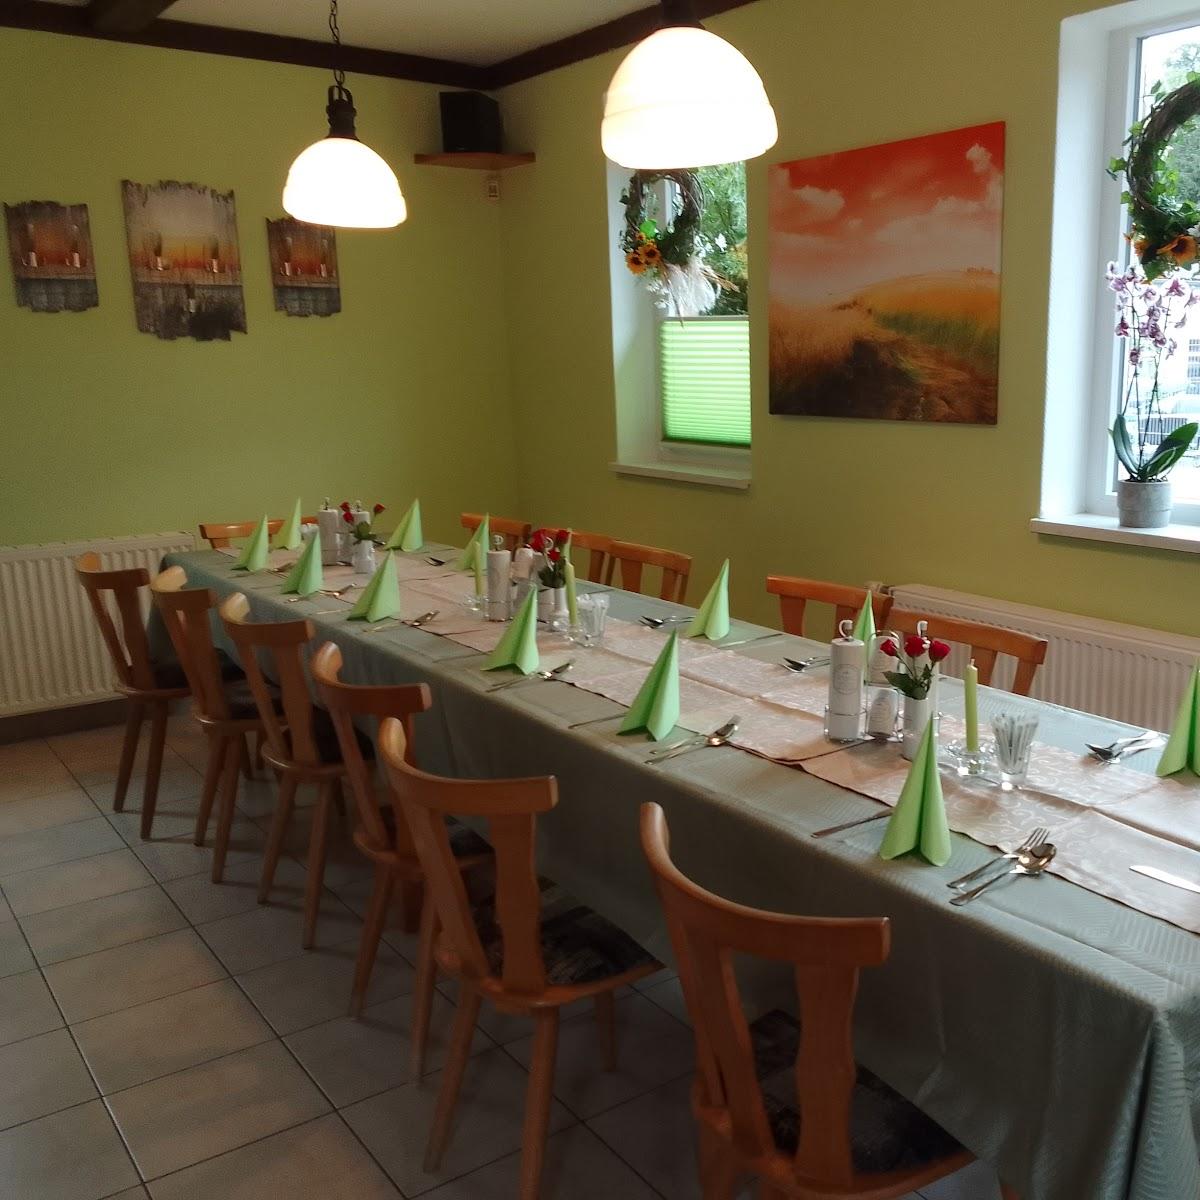 Restaurant "Mecklenburger Landküche Inhaber Harry Camin" in Plau am See